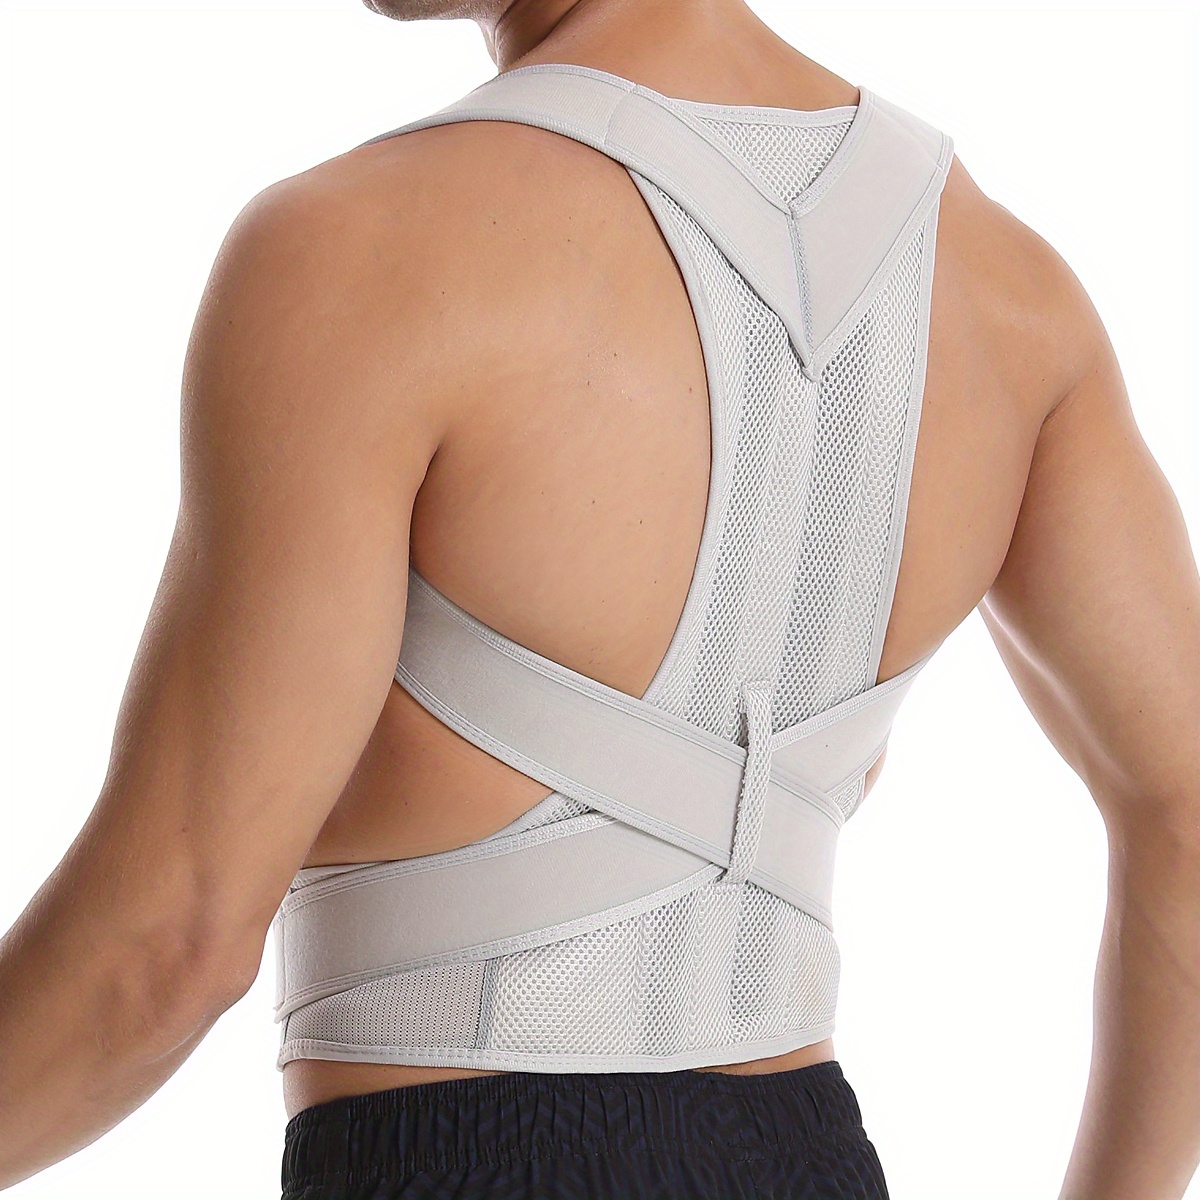 Posture corrector for back shoulder back support Women And M